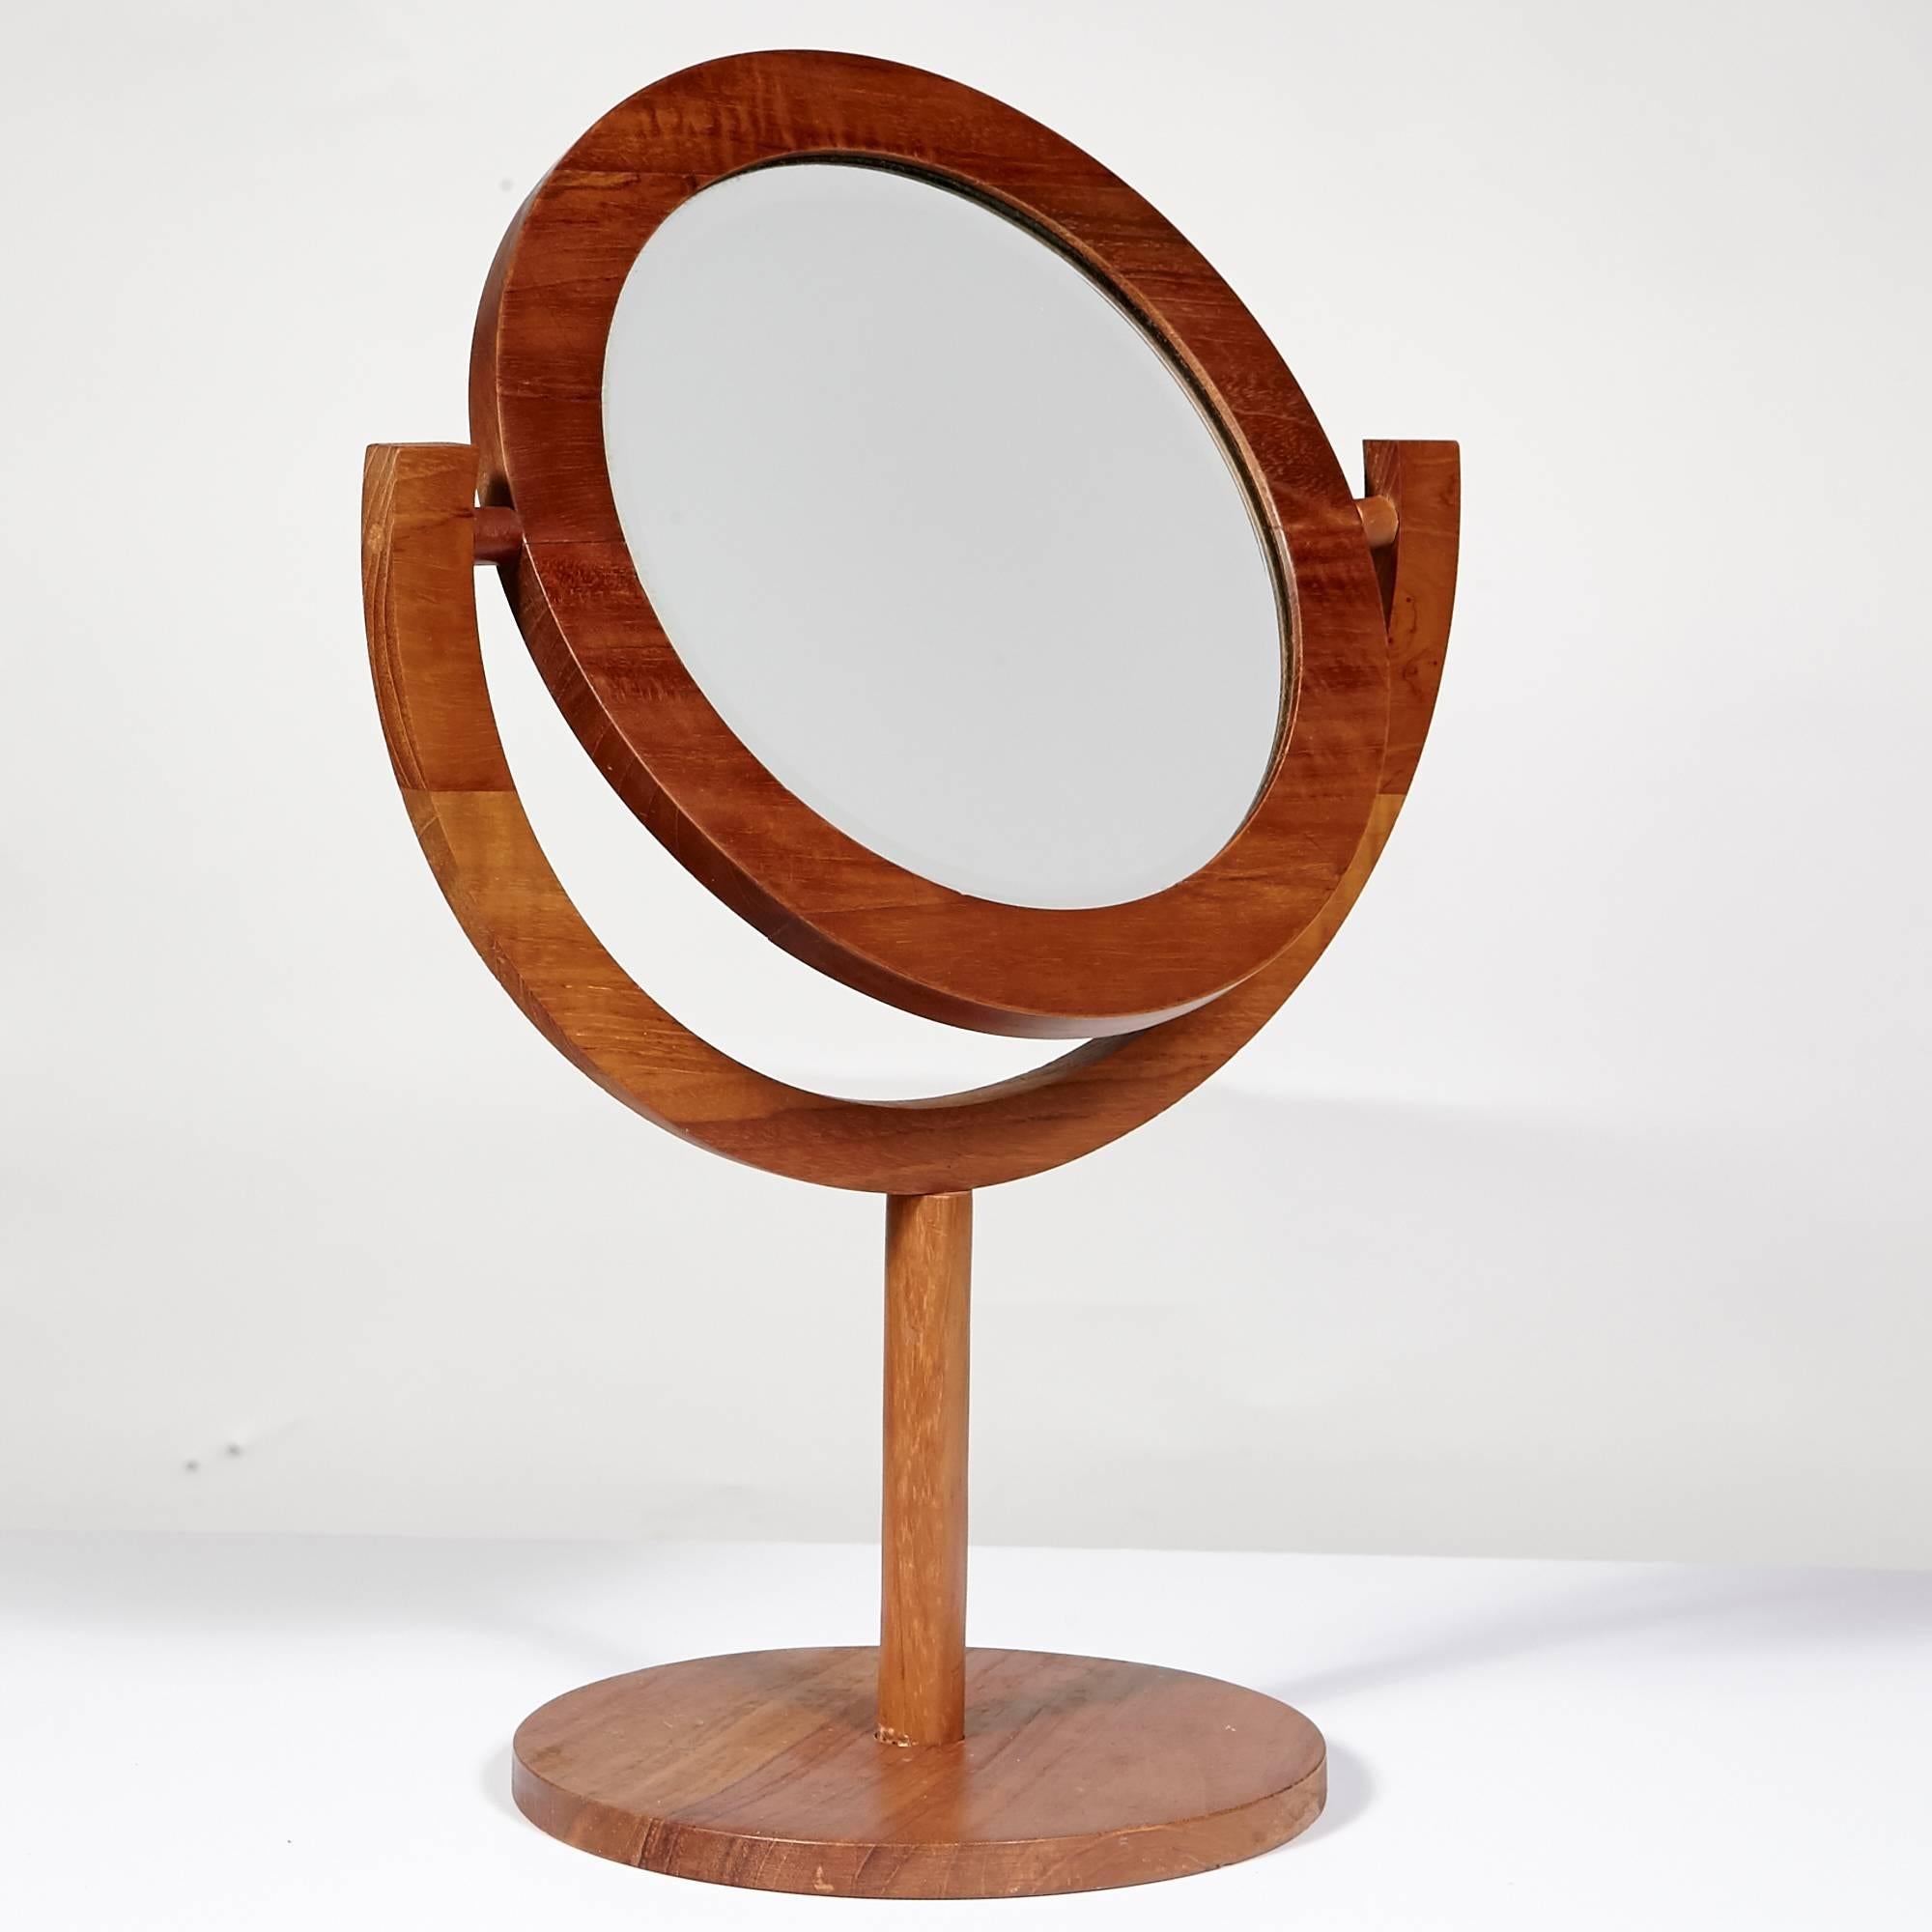 Danish Scandinavian Modern Teak Tilting Vanity Mirror Attributed to Pedersen & Hansen